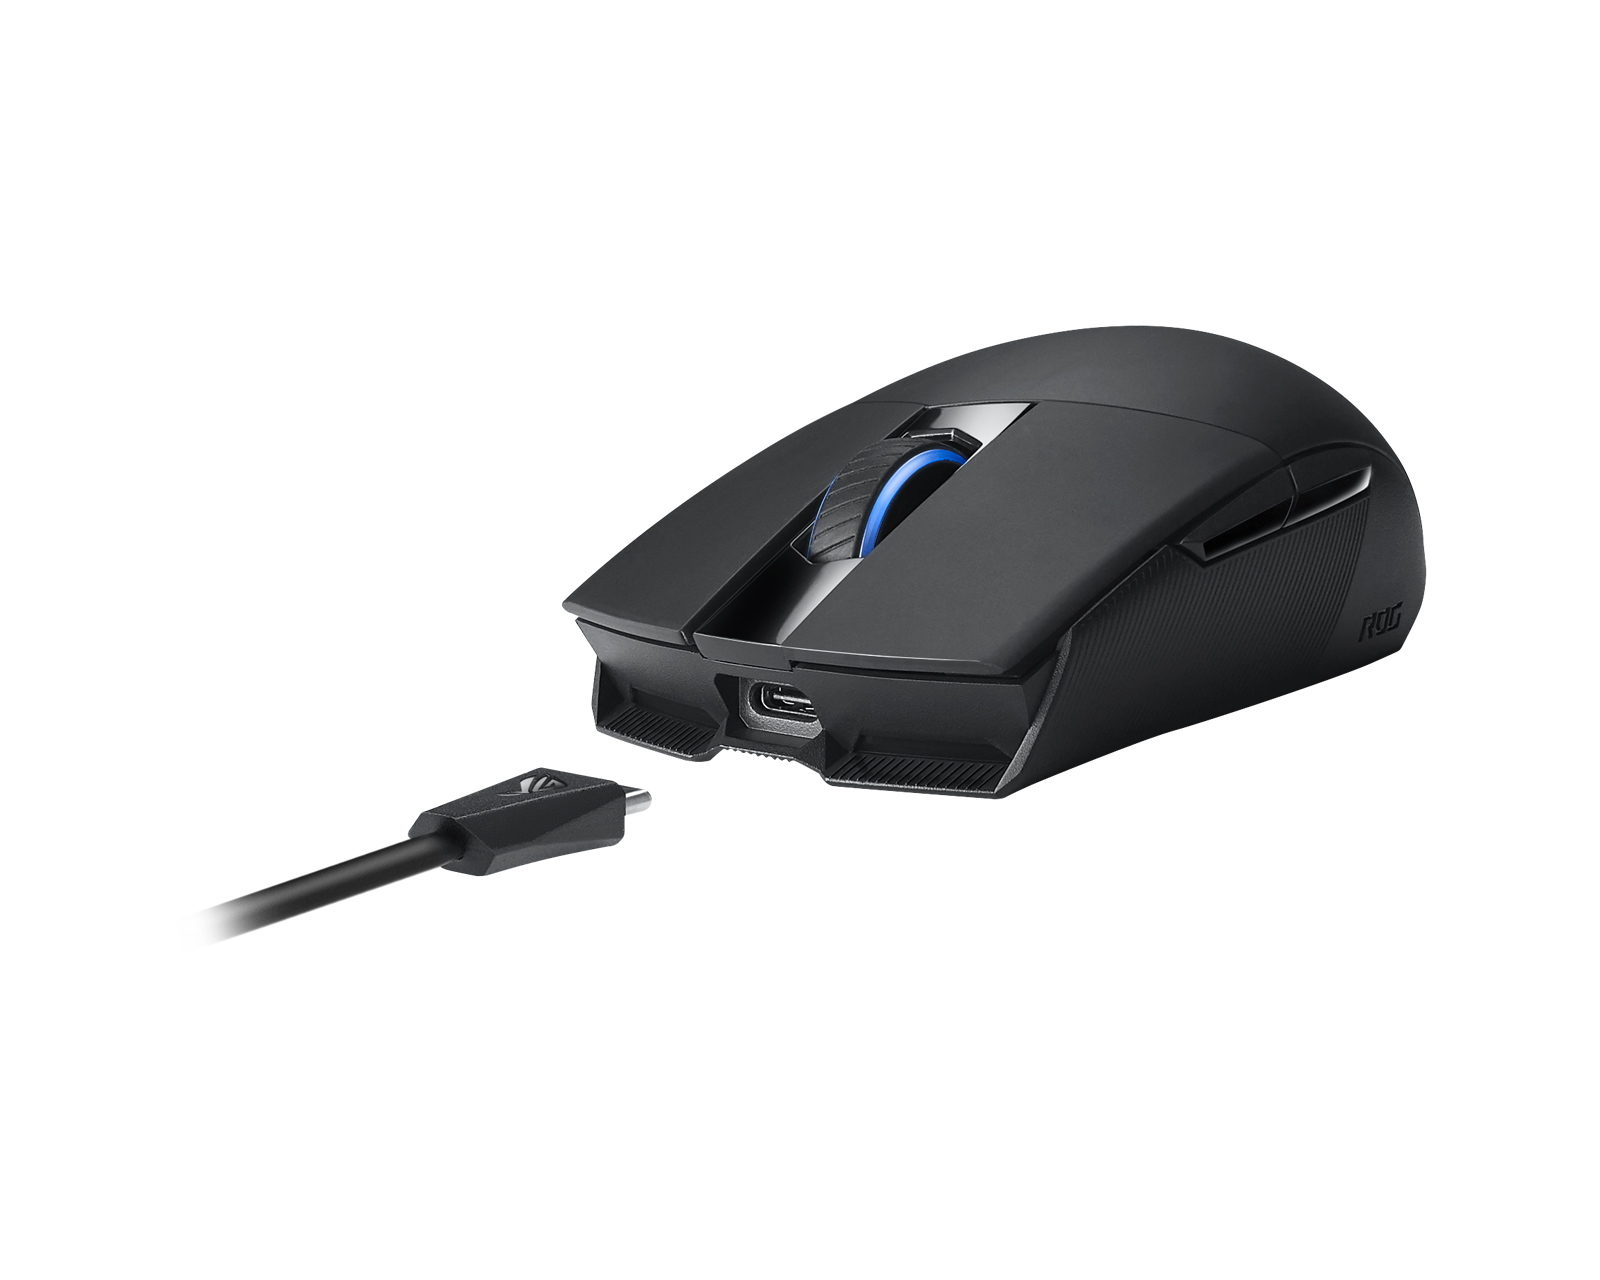 Buy Asus Strix Impact Ii Wireless Gaming Mouse At Us Maxgaming Com